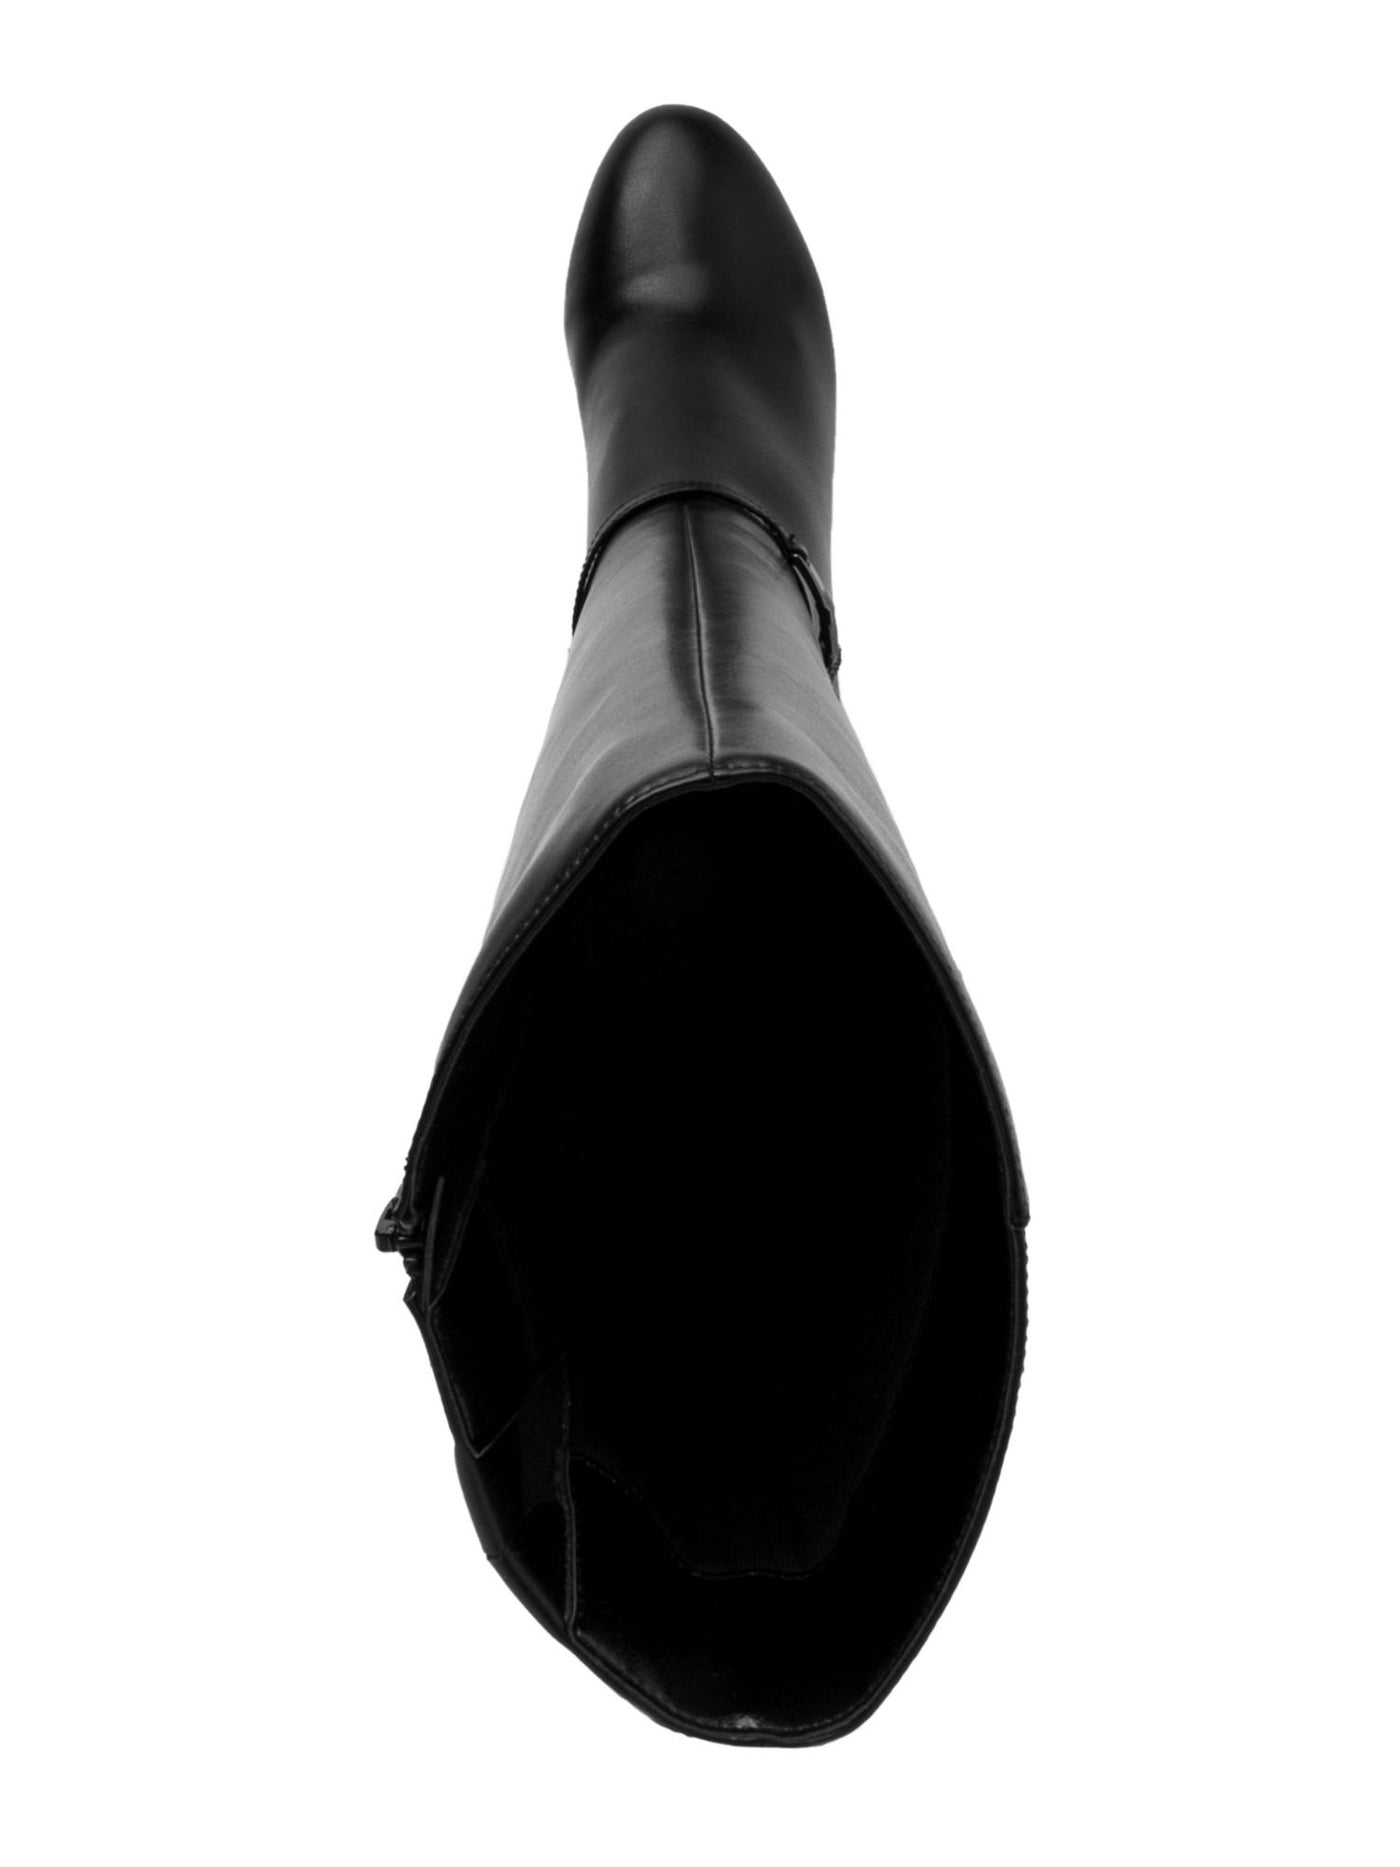 KAREN SCOTT Womens Black Chain Accent Padded Hanna Almond Toe Sculpted Heel Zip-Up Dress Boots 10.5 M